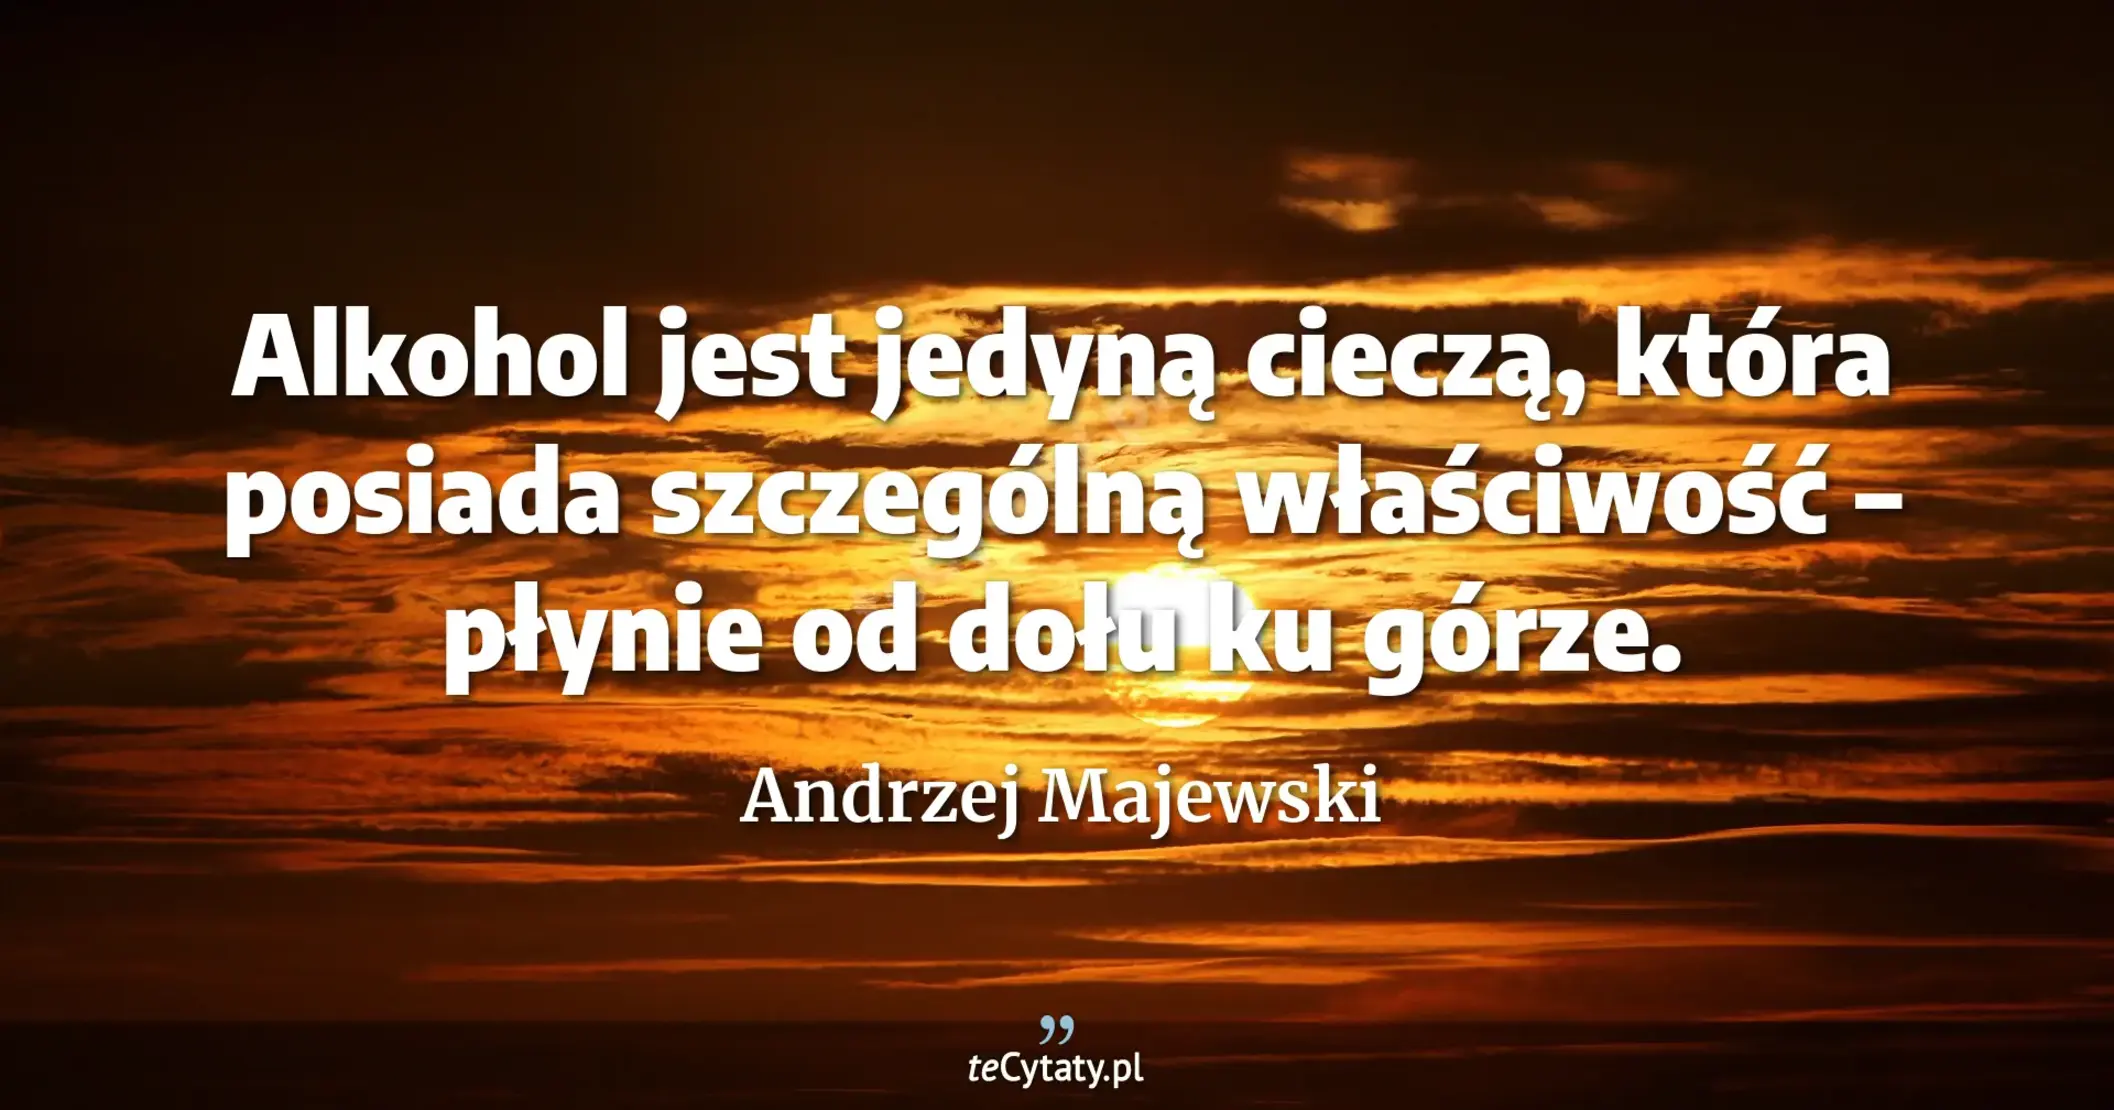 Alkohol jest jedyną cieczą, która posiada szczególną właściwość – płynie od dołu ku górze. - Andrzej Majewski